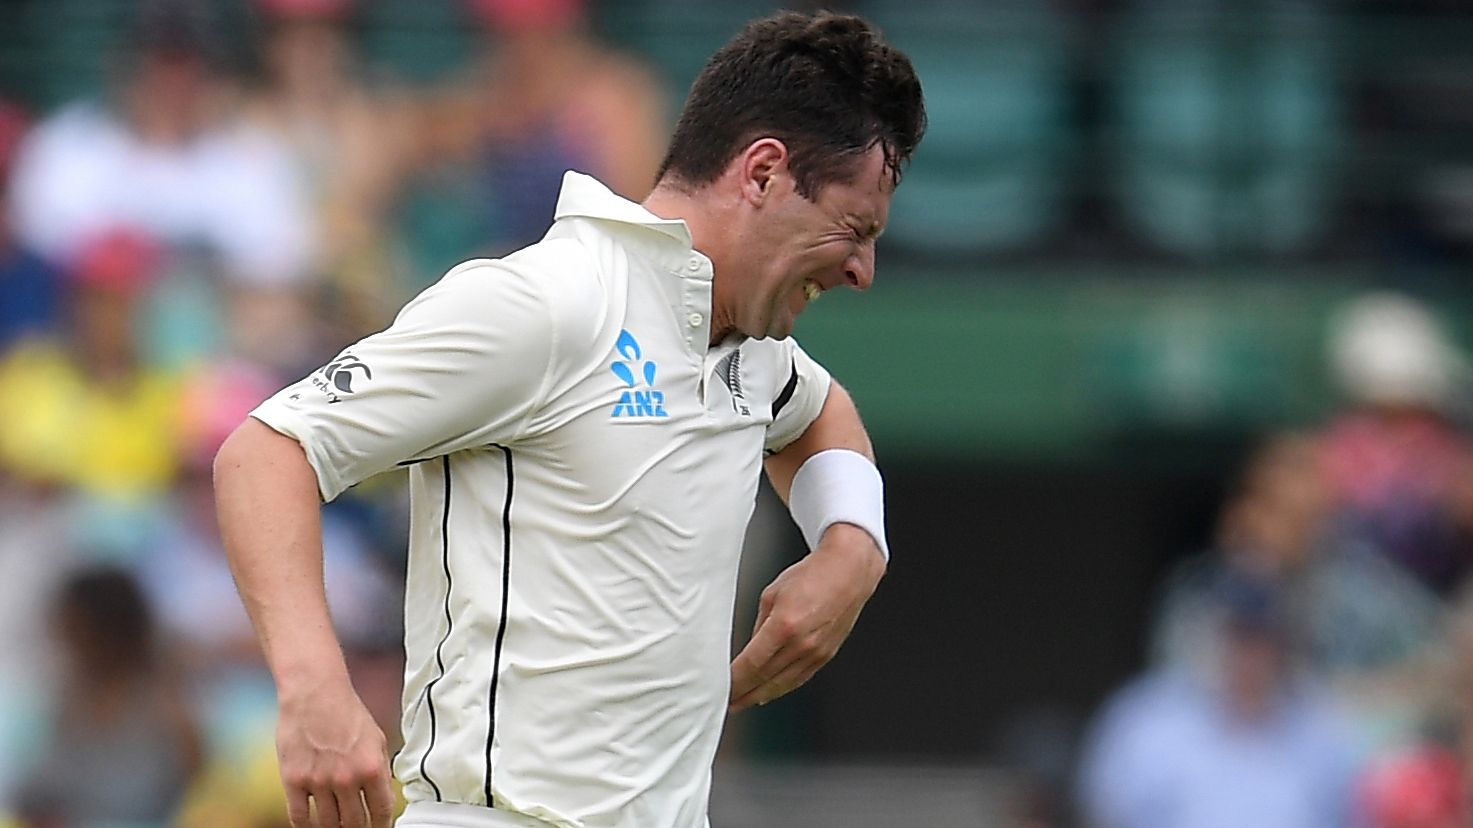 More injury misery for New Zealand as Matt Henry breaks thumb